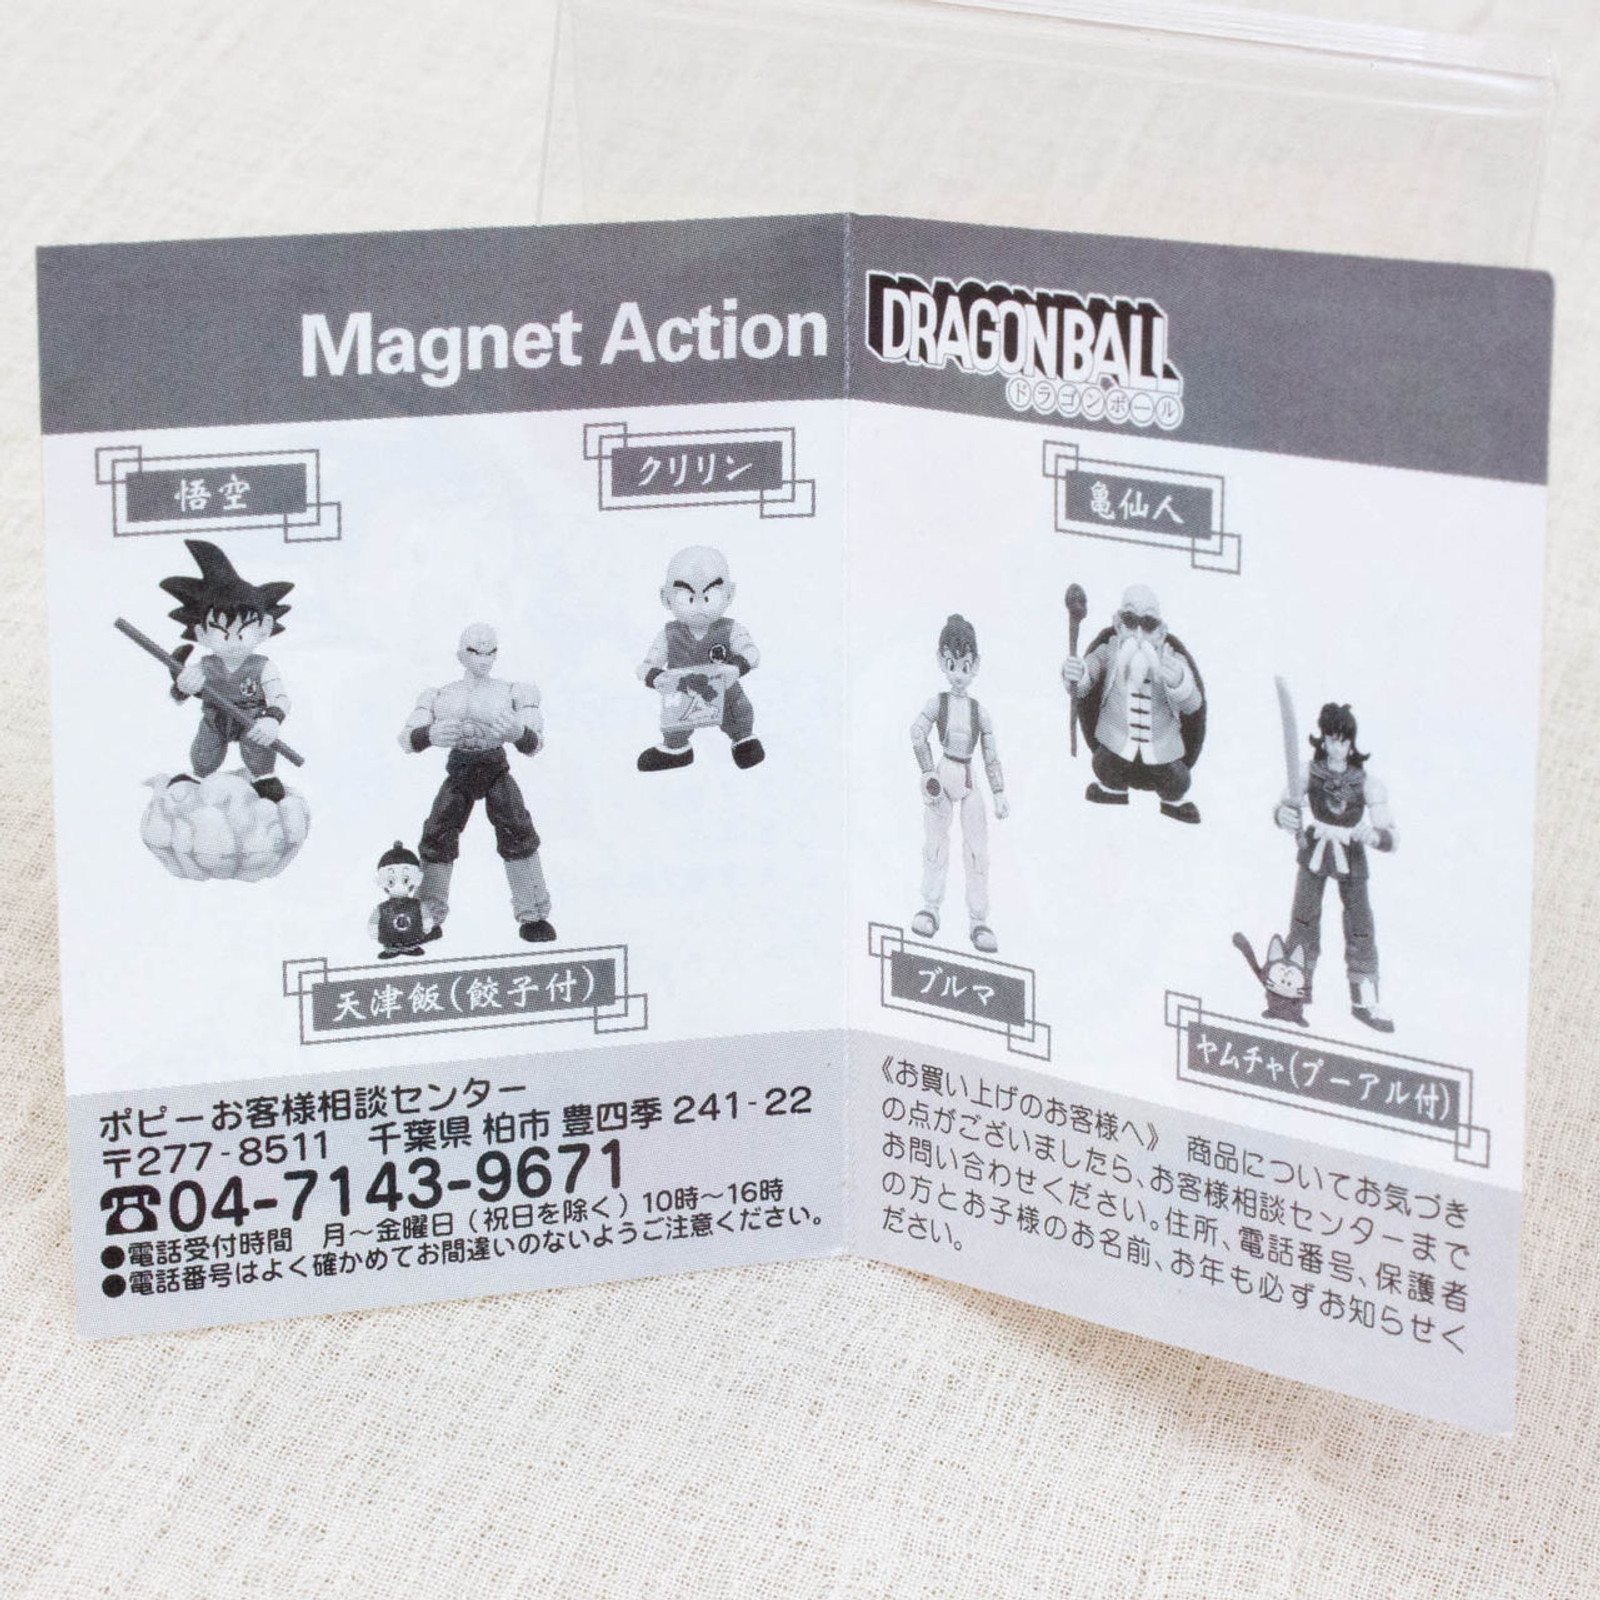 Dragon Ball Krillin Magnet Action Mini Figure Popy JAPAN ANIME MANGA